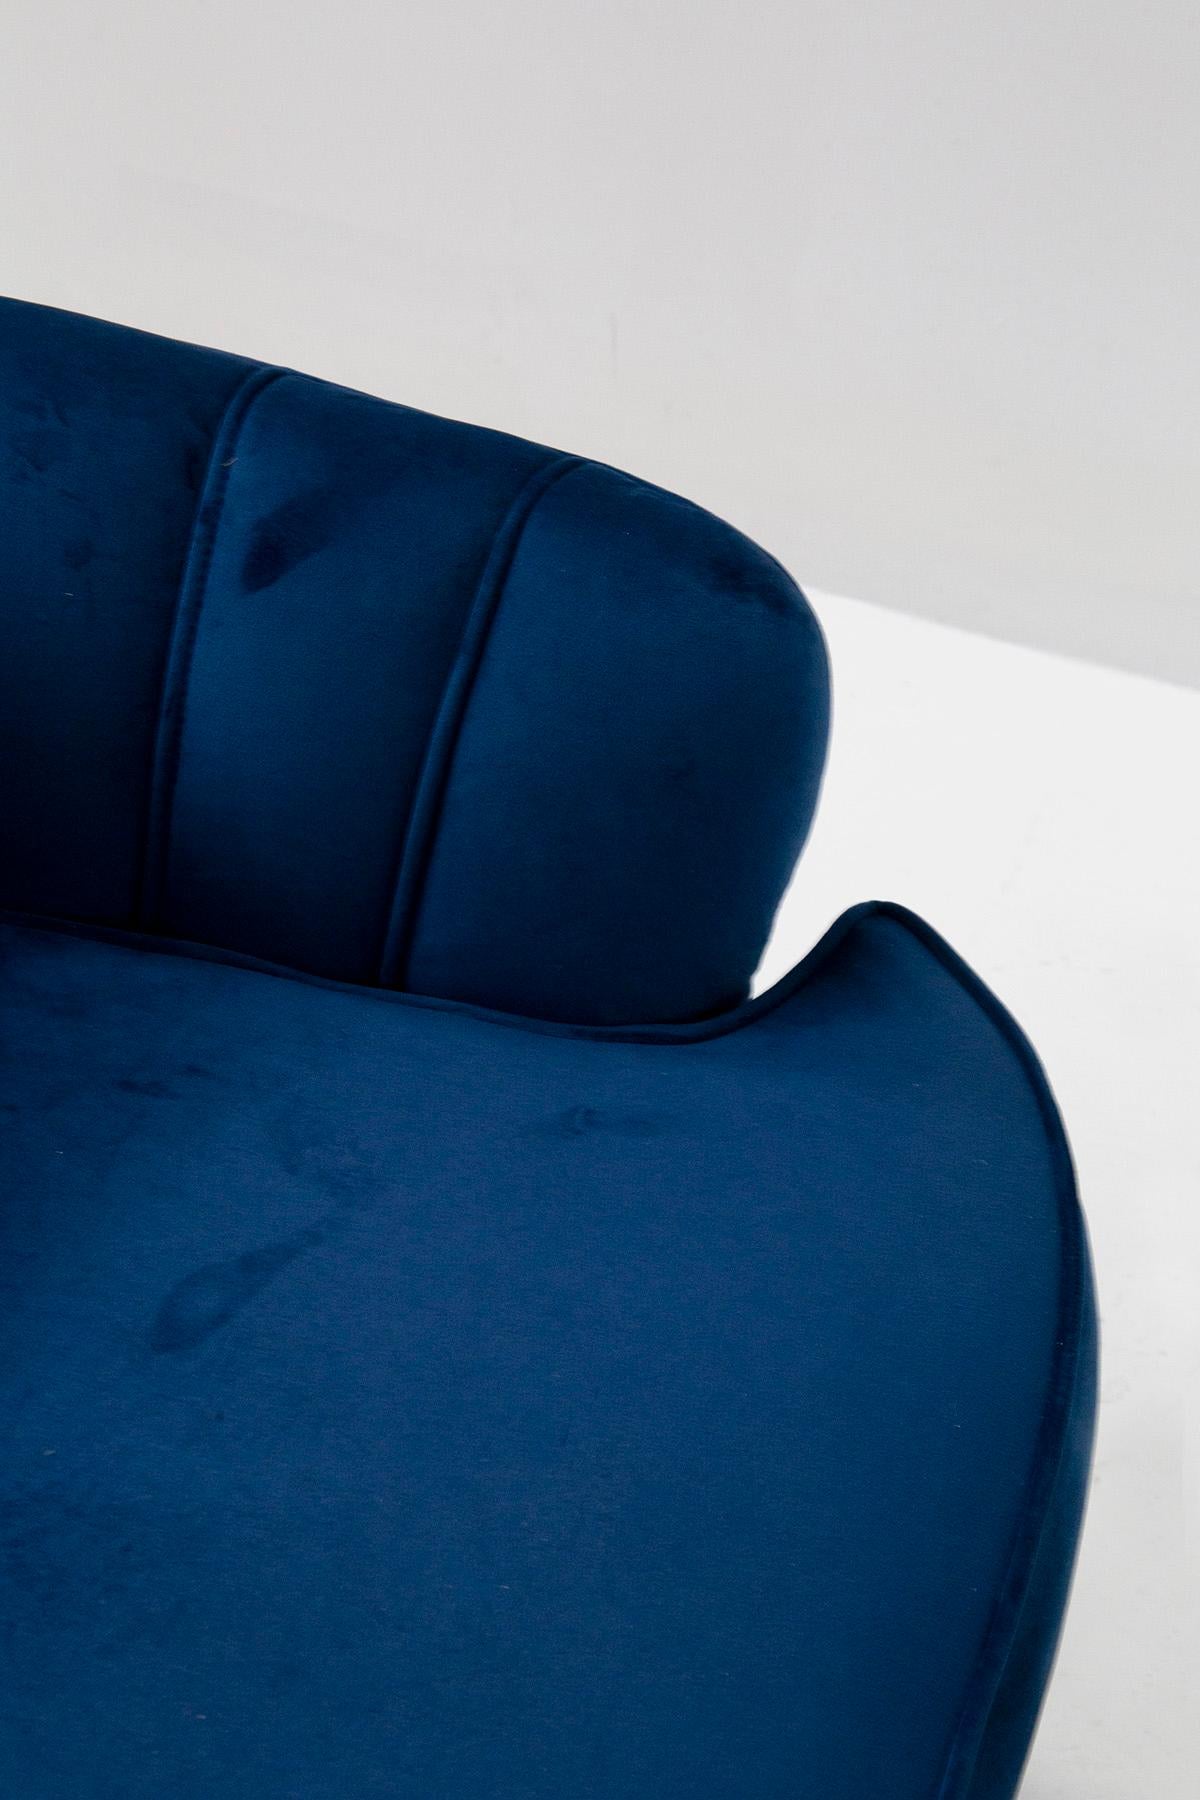 Pair of Midcentury Italian Shell Chairs in Blue Velvet 7